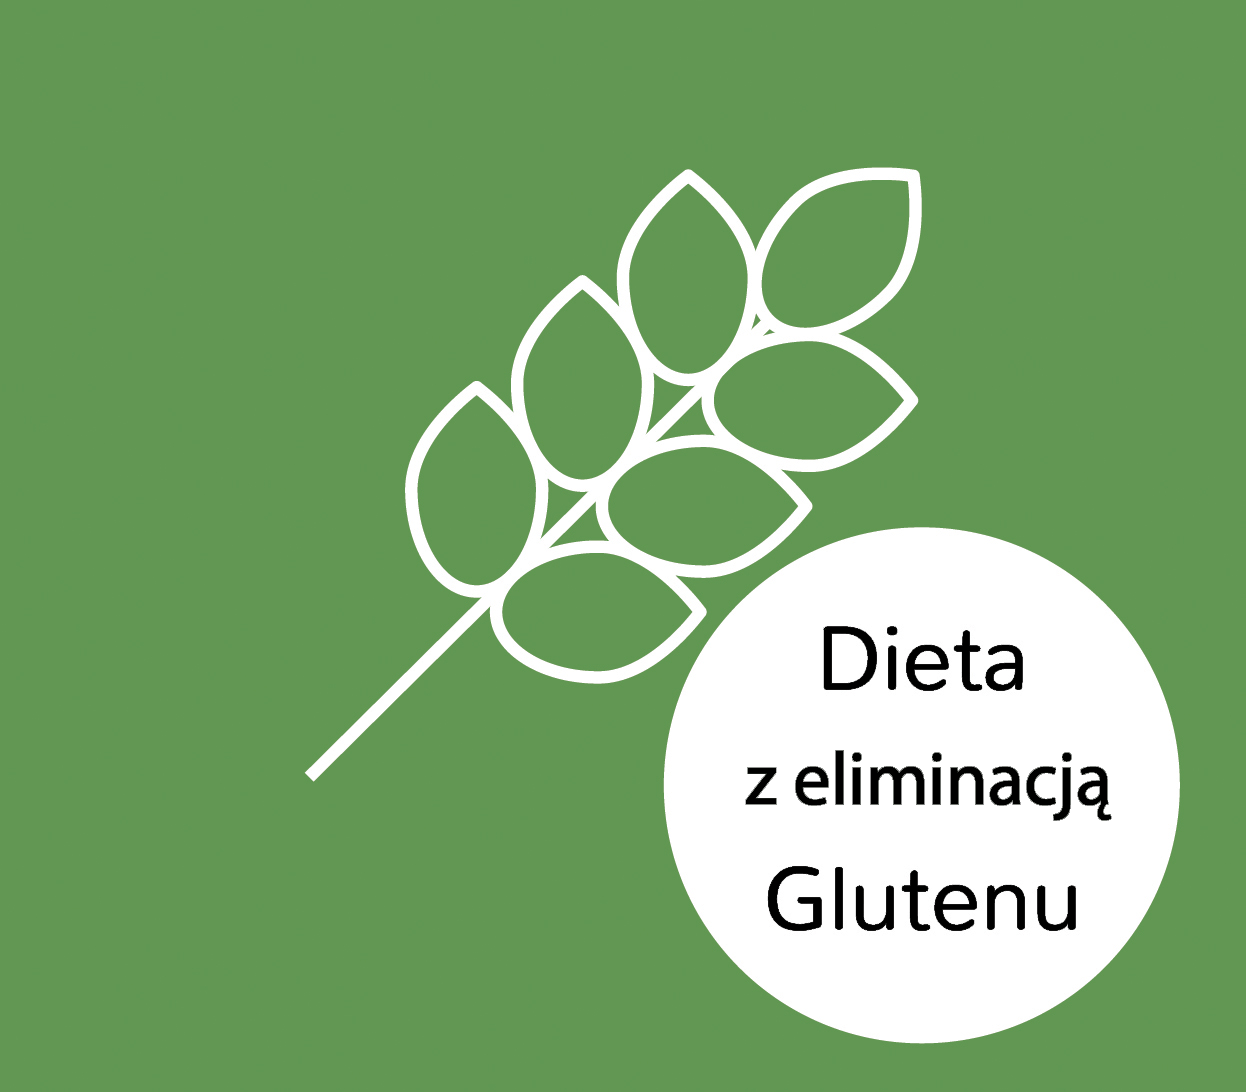 Dieta z eliminacją glutenu